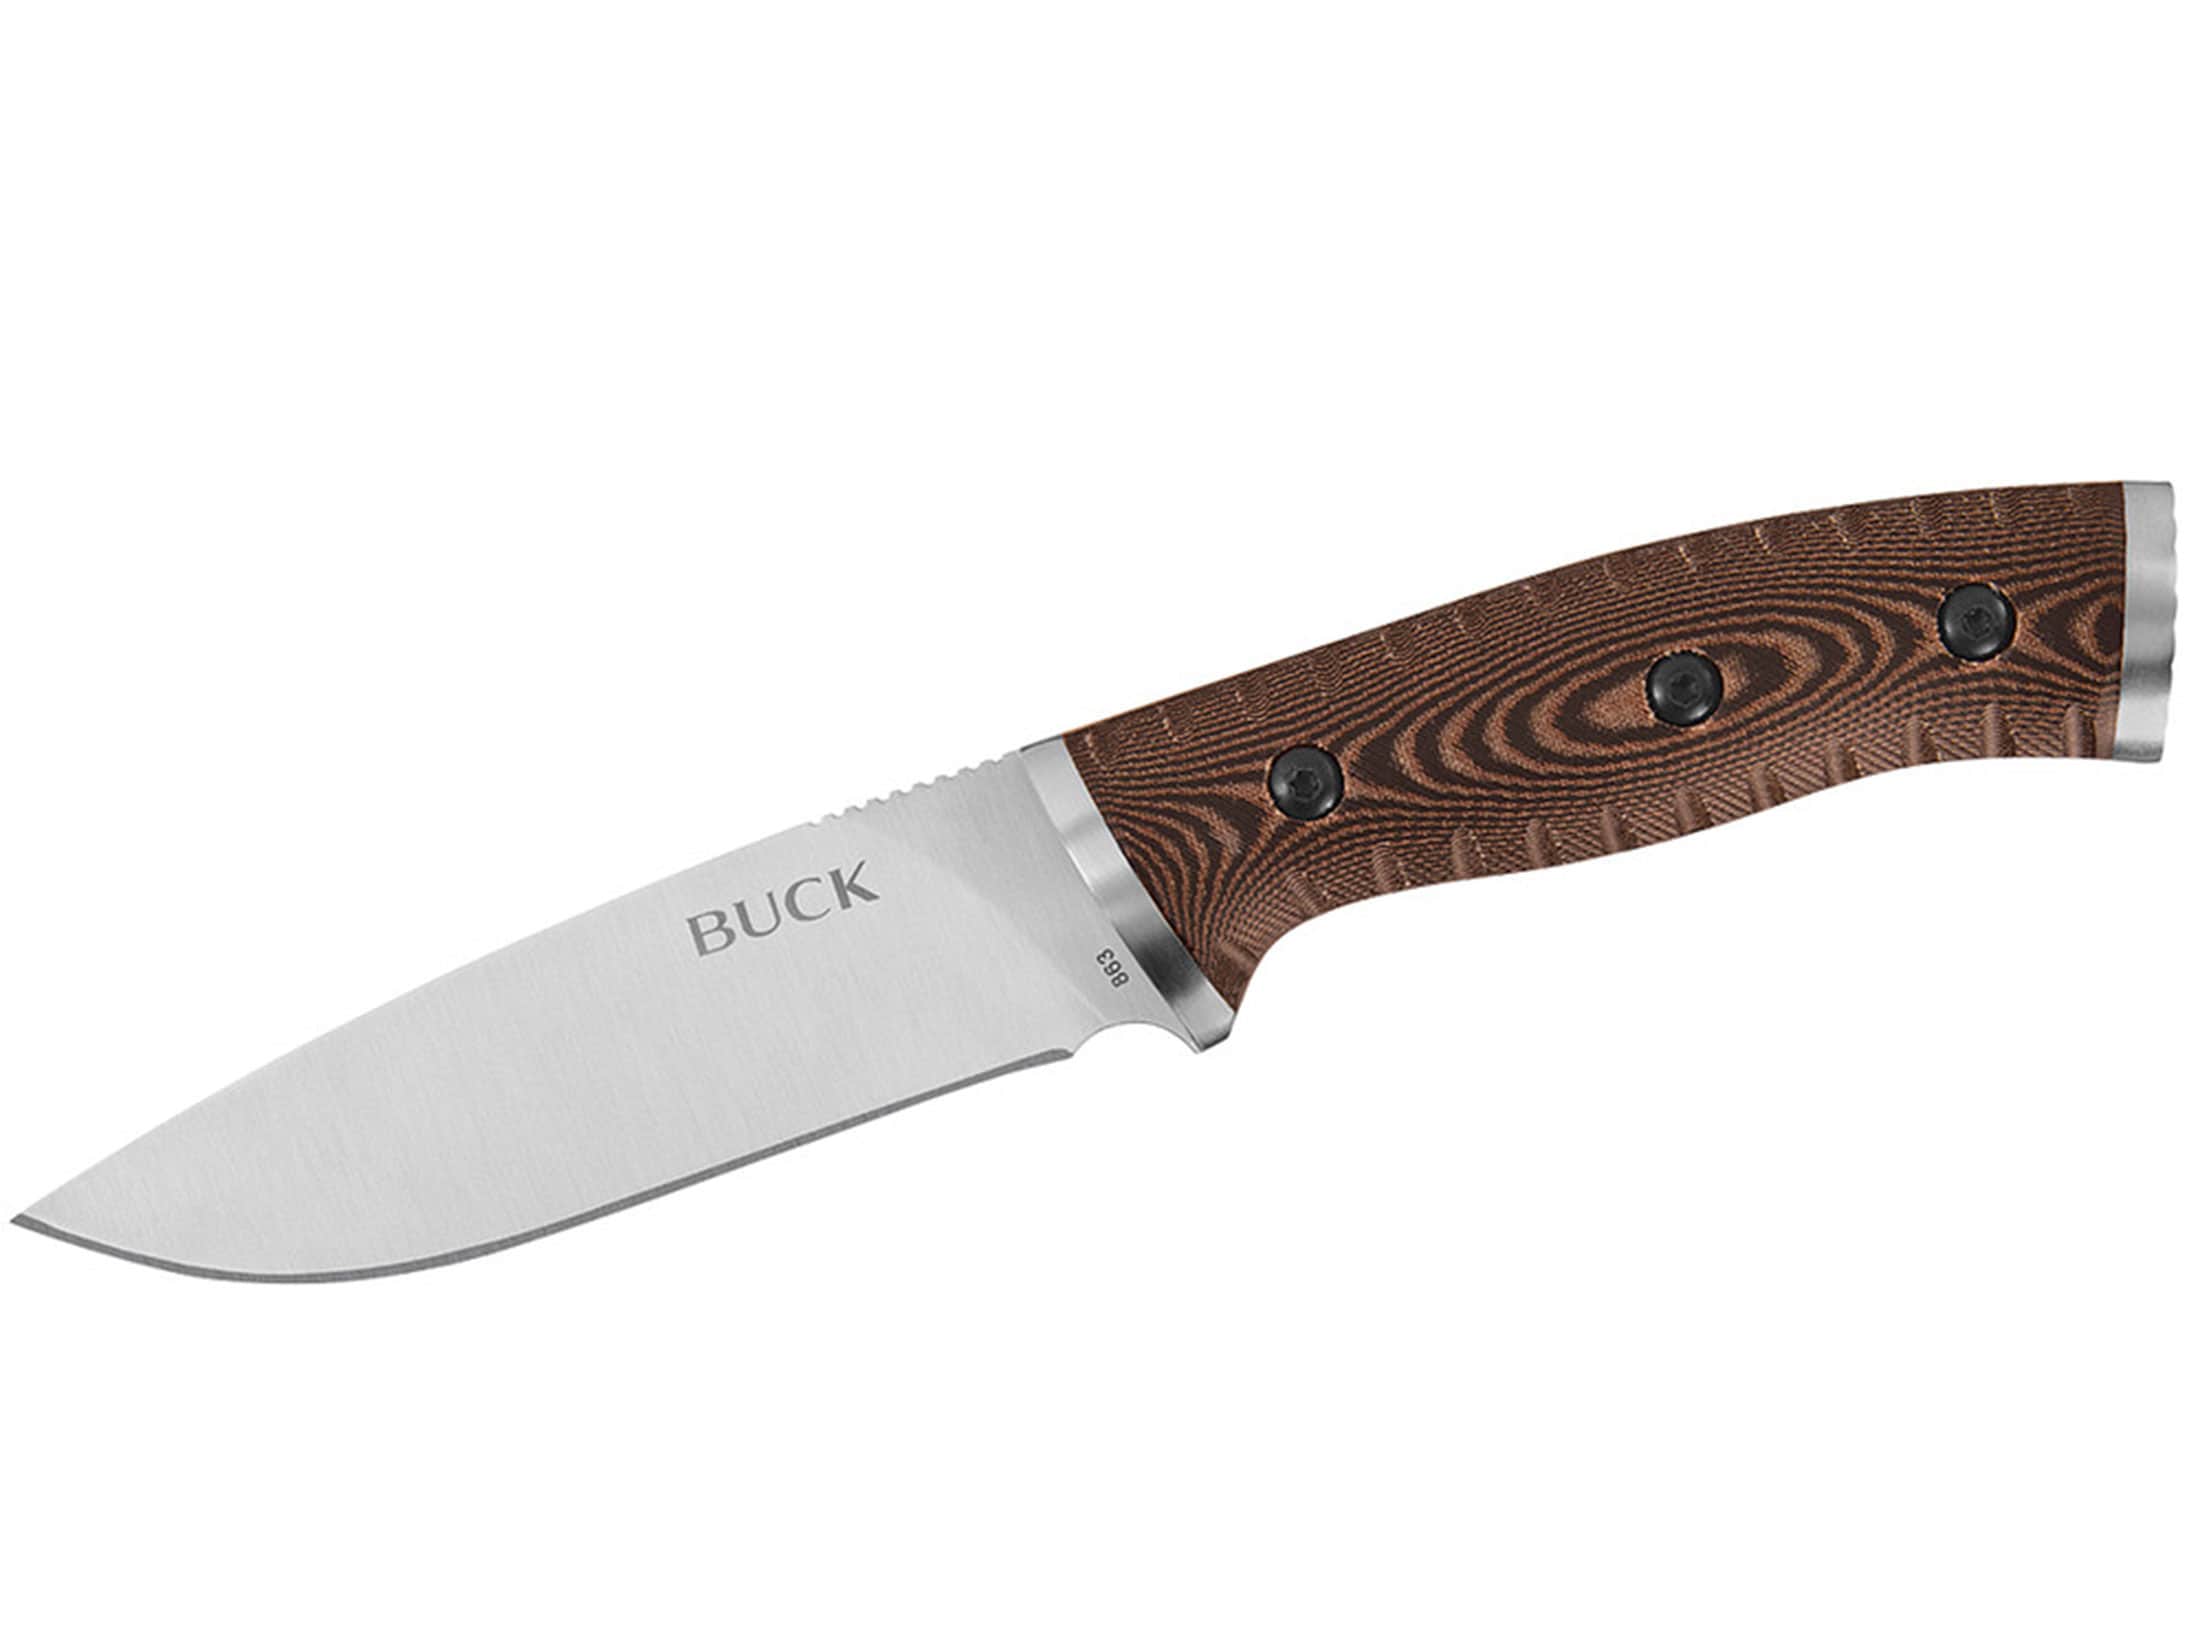 Buck 863 Selkirk Fixed Blade Knife 4.625 Drop Point 420HC Steel Blade